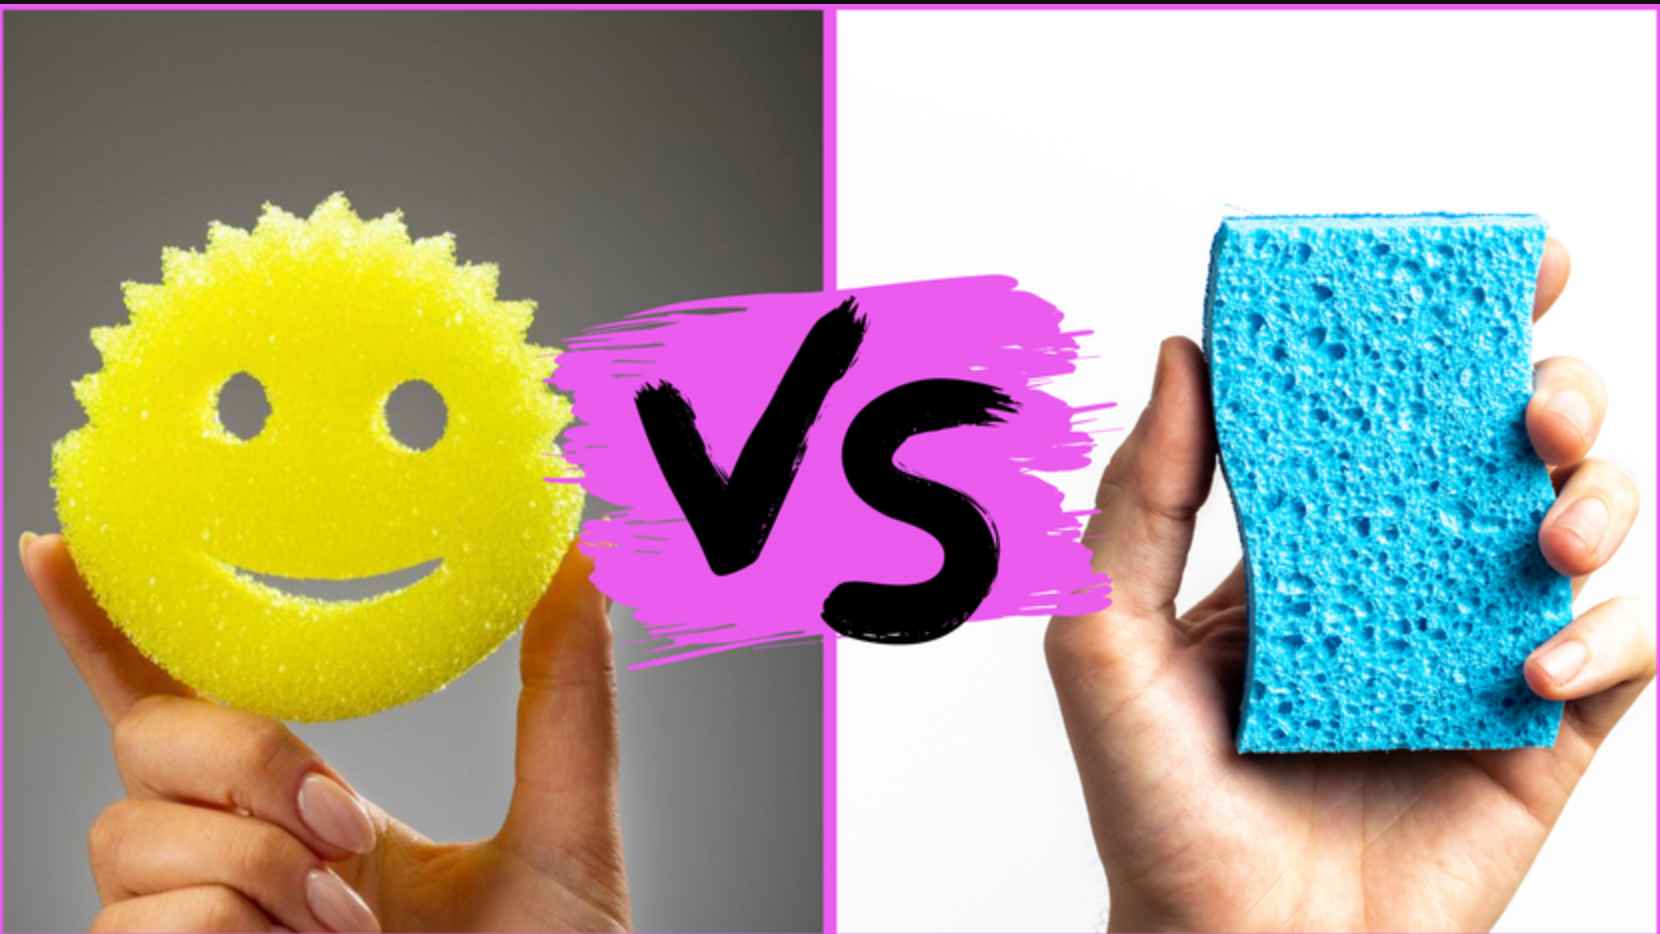 Scrub Daddy vs. Scrub Mommy: Which One Works Best?